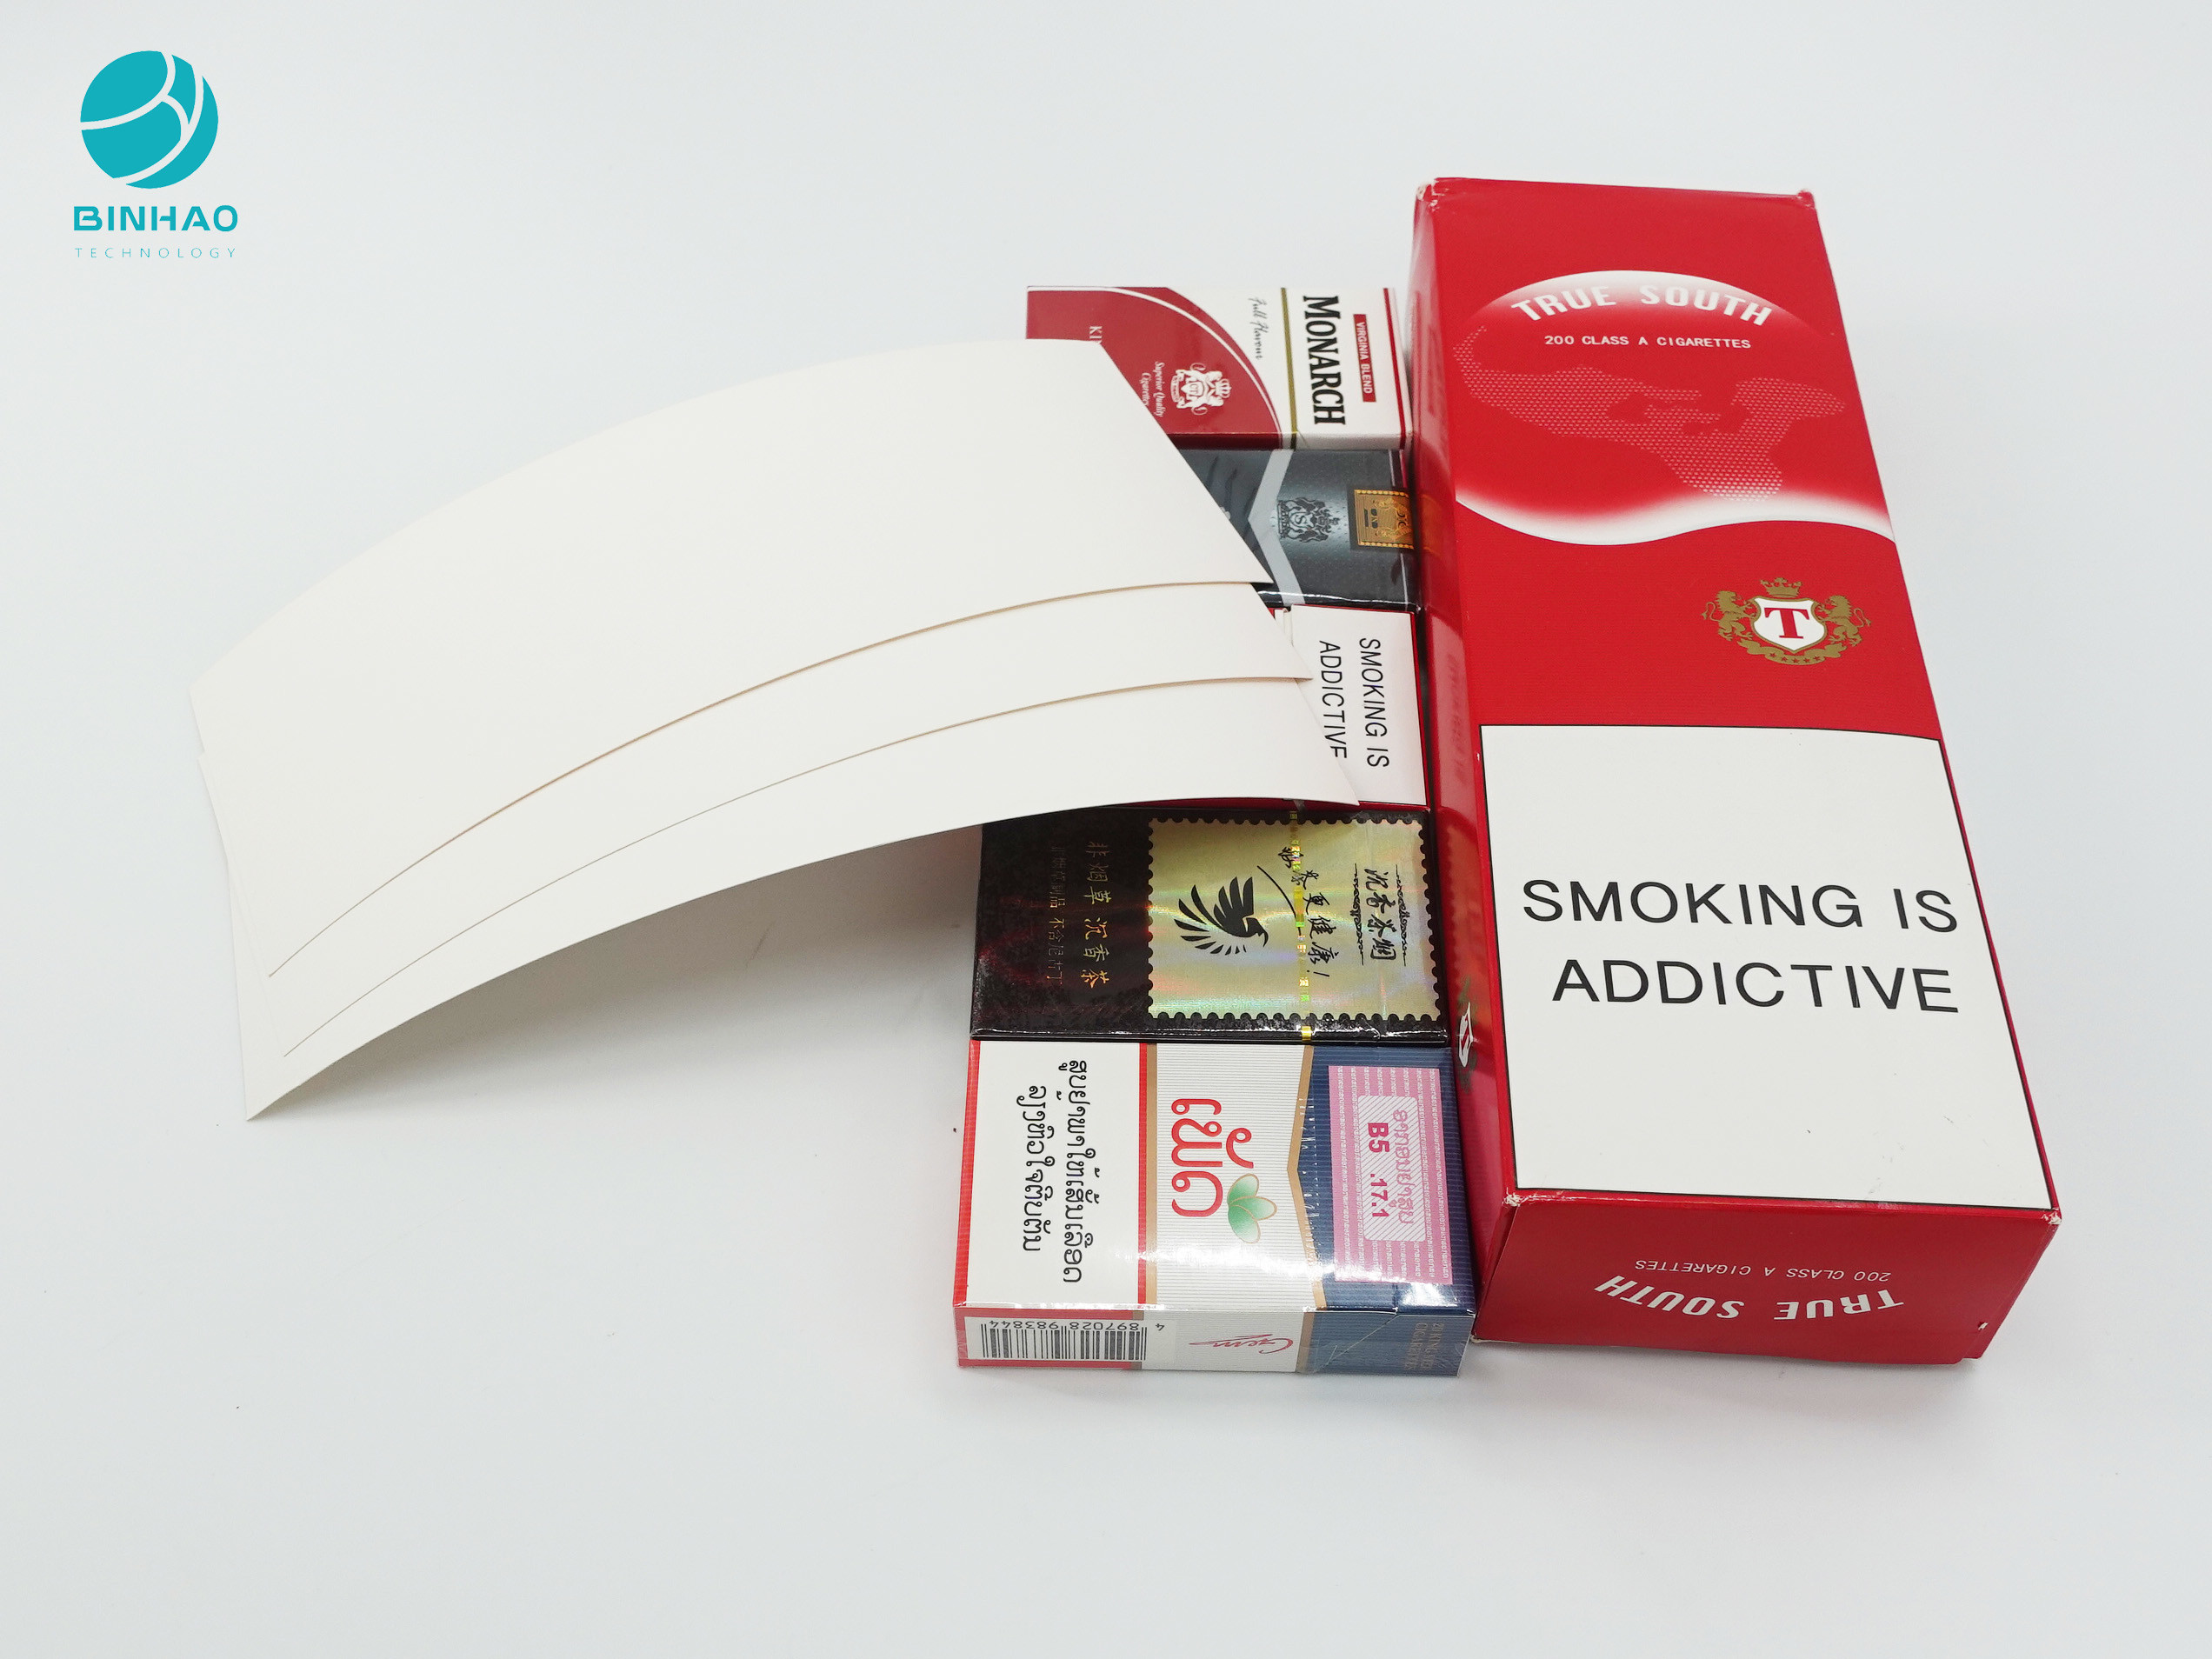 Cajas durables disponibles de encargo de la cartulina de la caja de papel para el empaquetado del cigarrillo